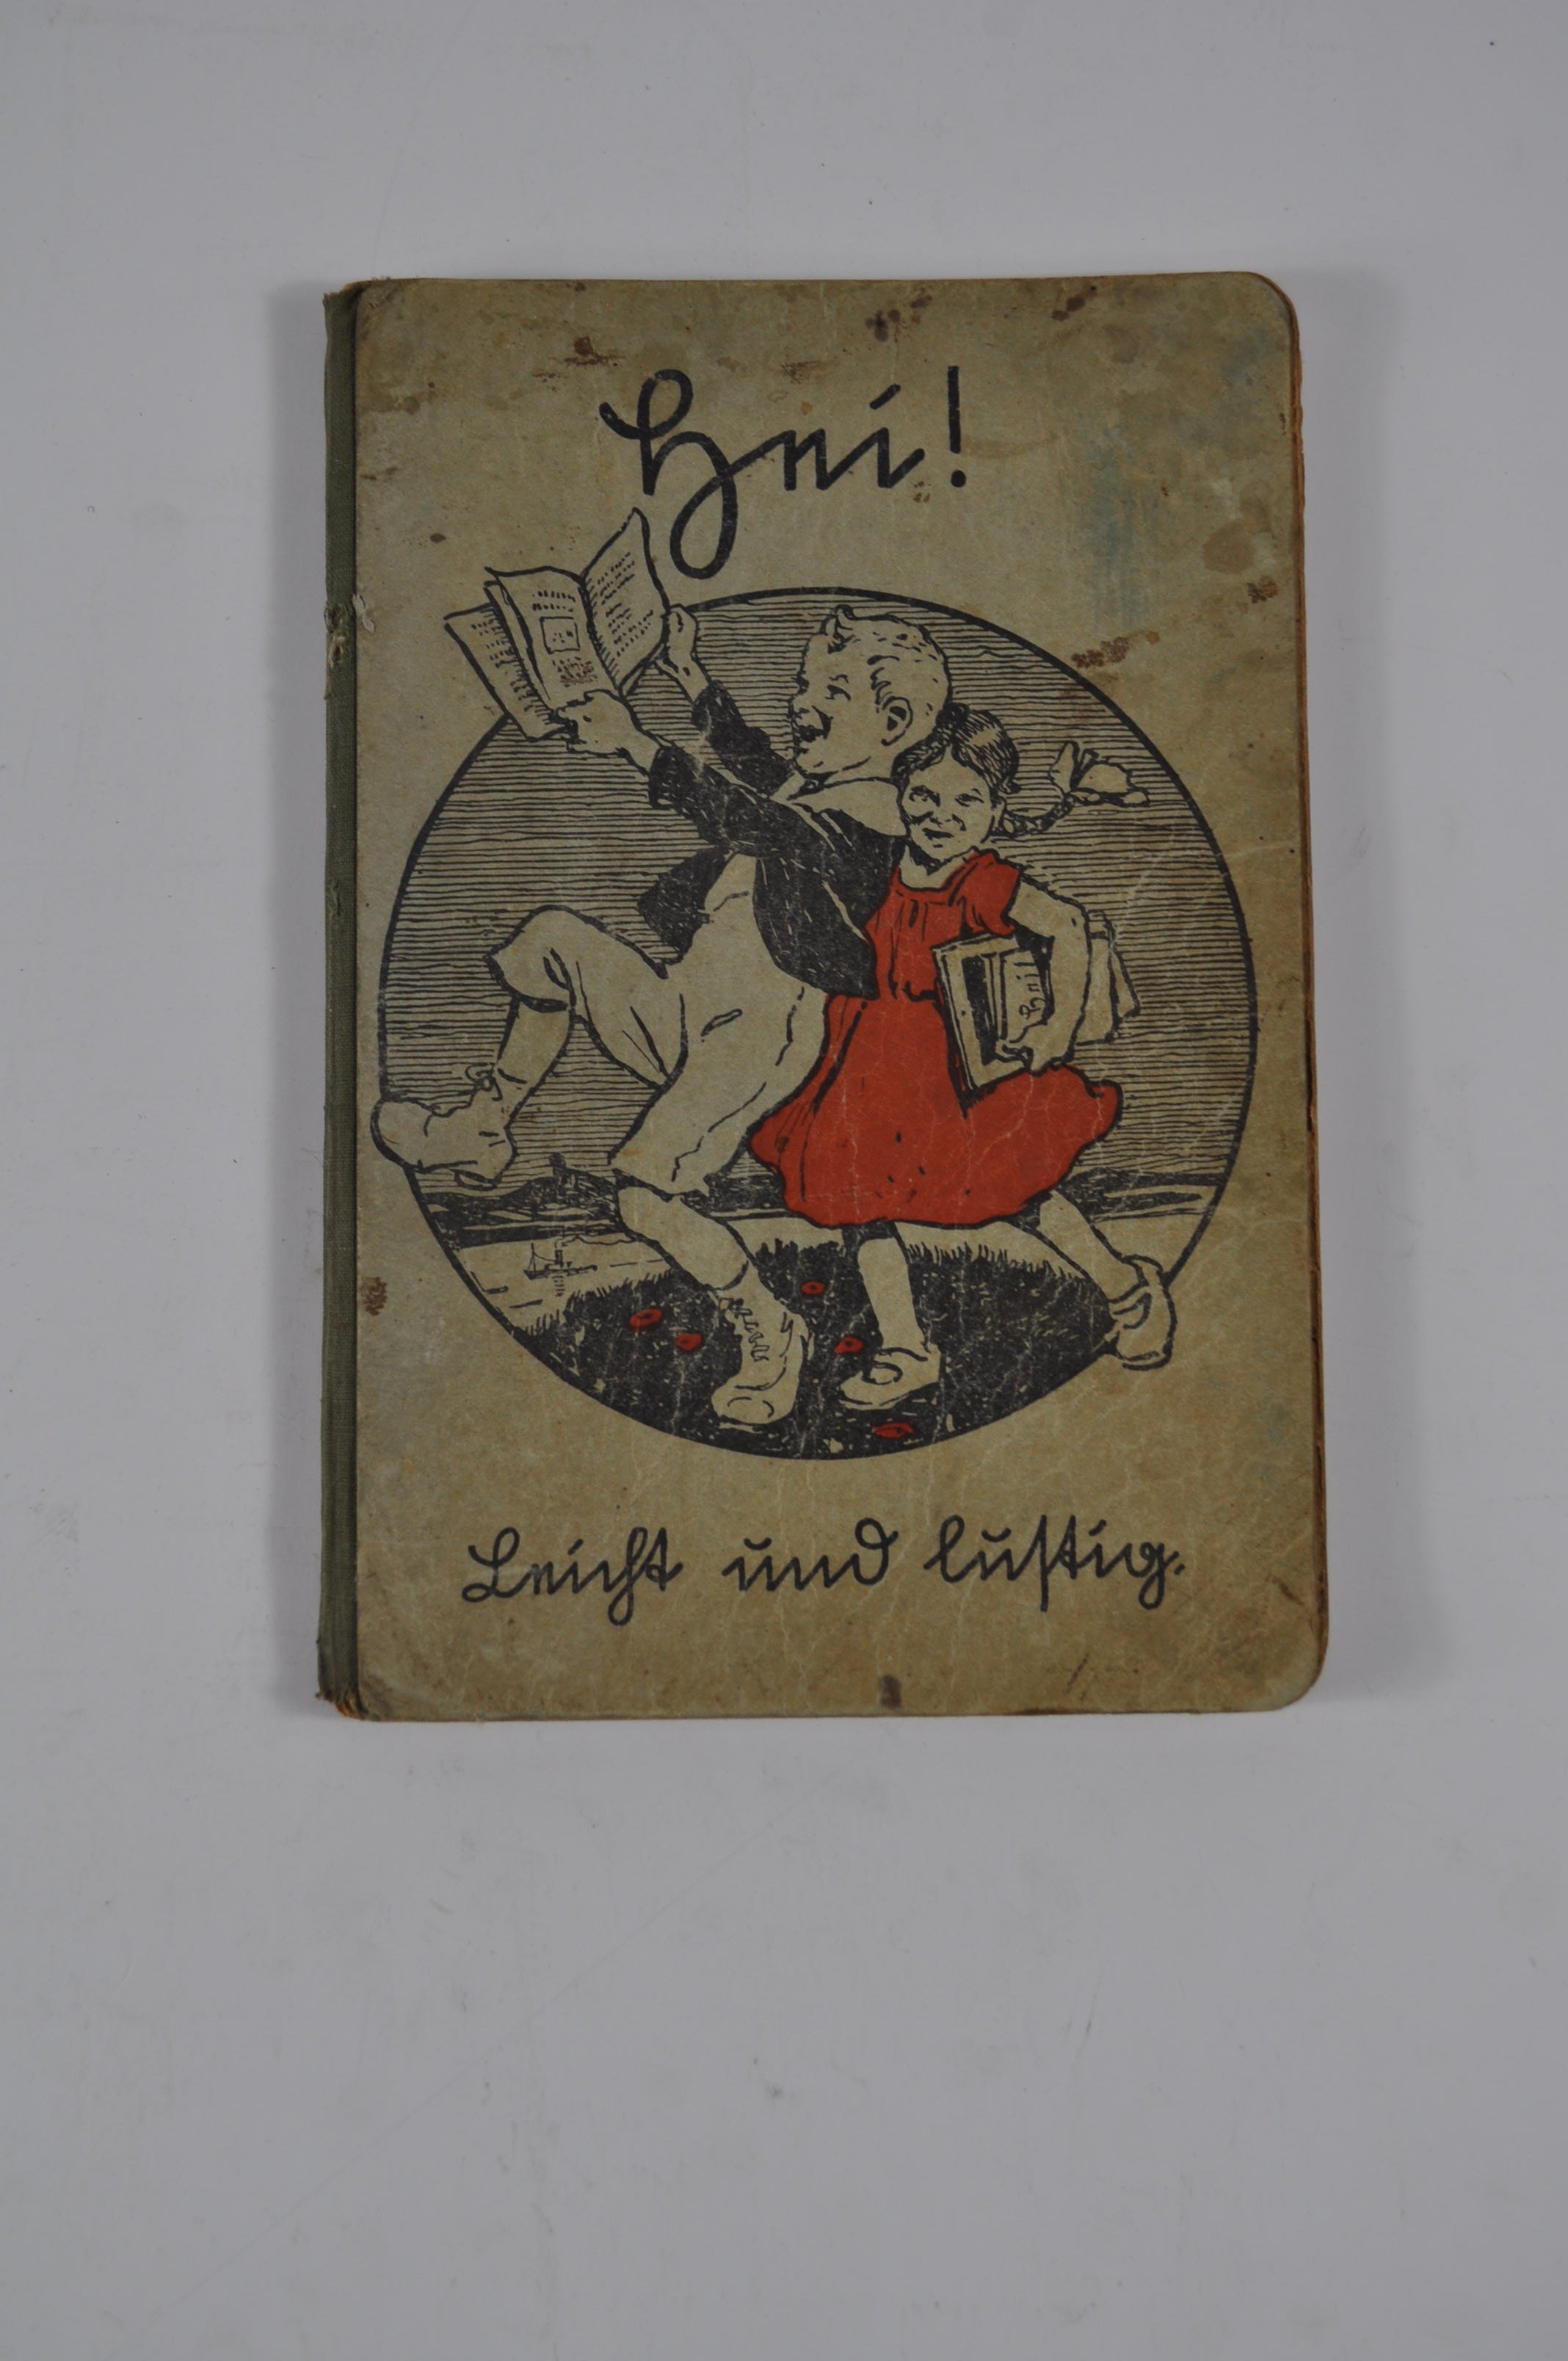 Hei! Leicht und Lustig, rheinische Fibel (Rheinland-Pfälzisches Freilichtmuseum CC BY-NC-SA)